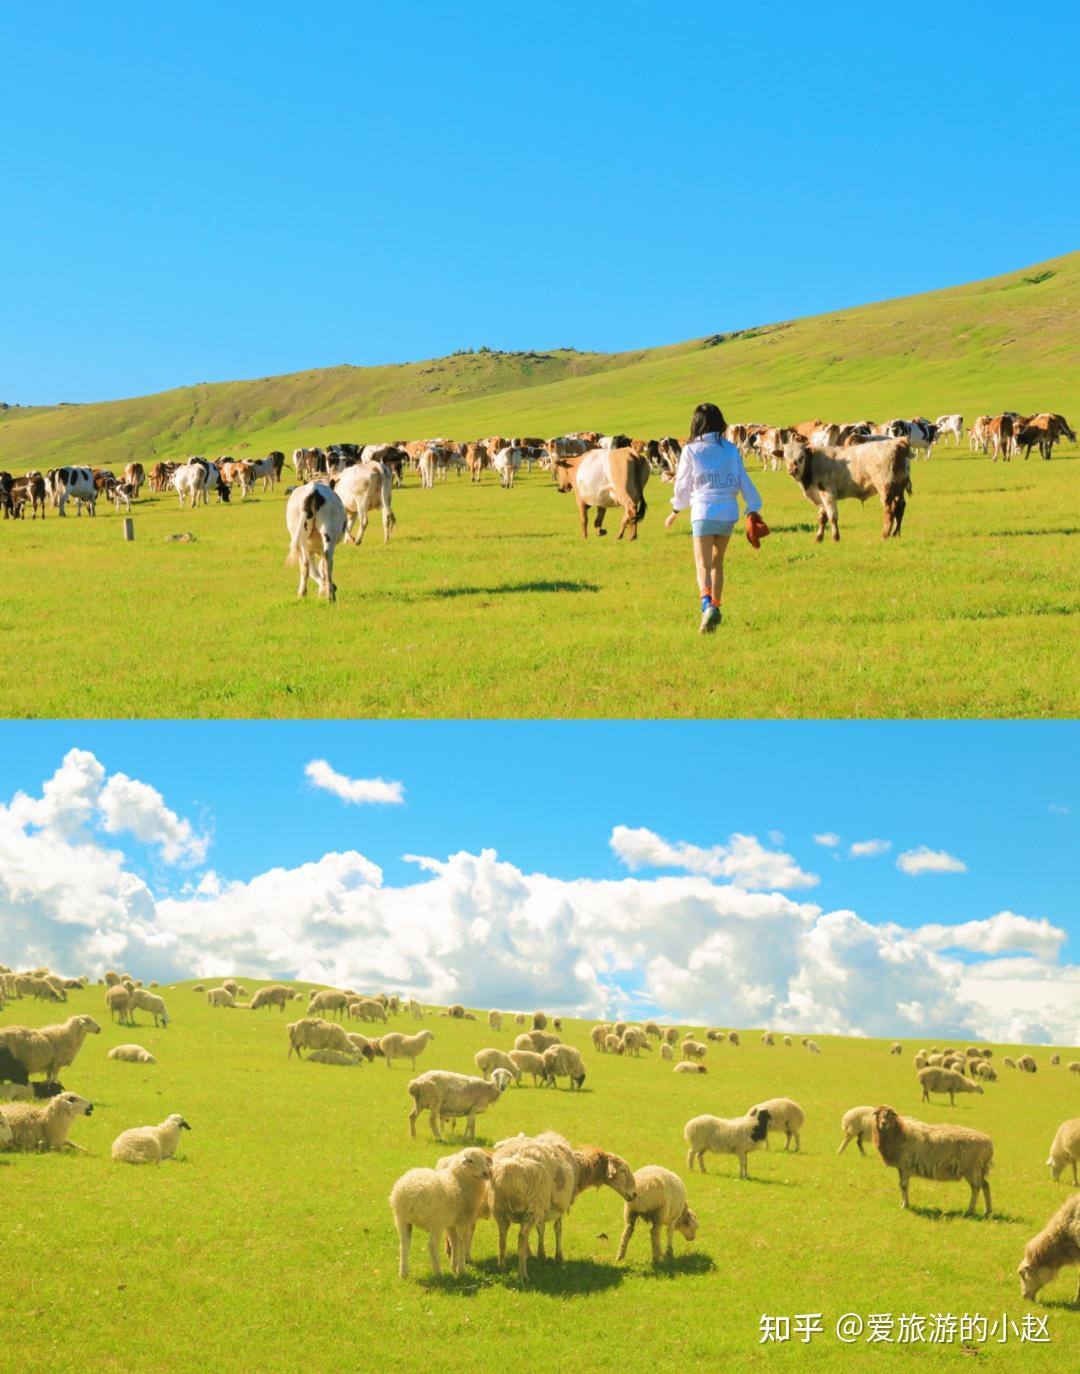 内蒙古旅游攻略 - 真实的内蒙古旅游攻略分享,夏天一起去大草原撒欢